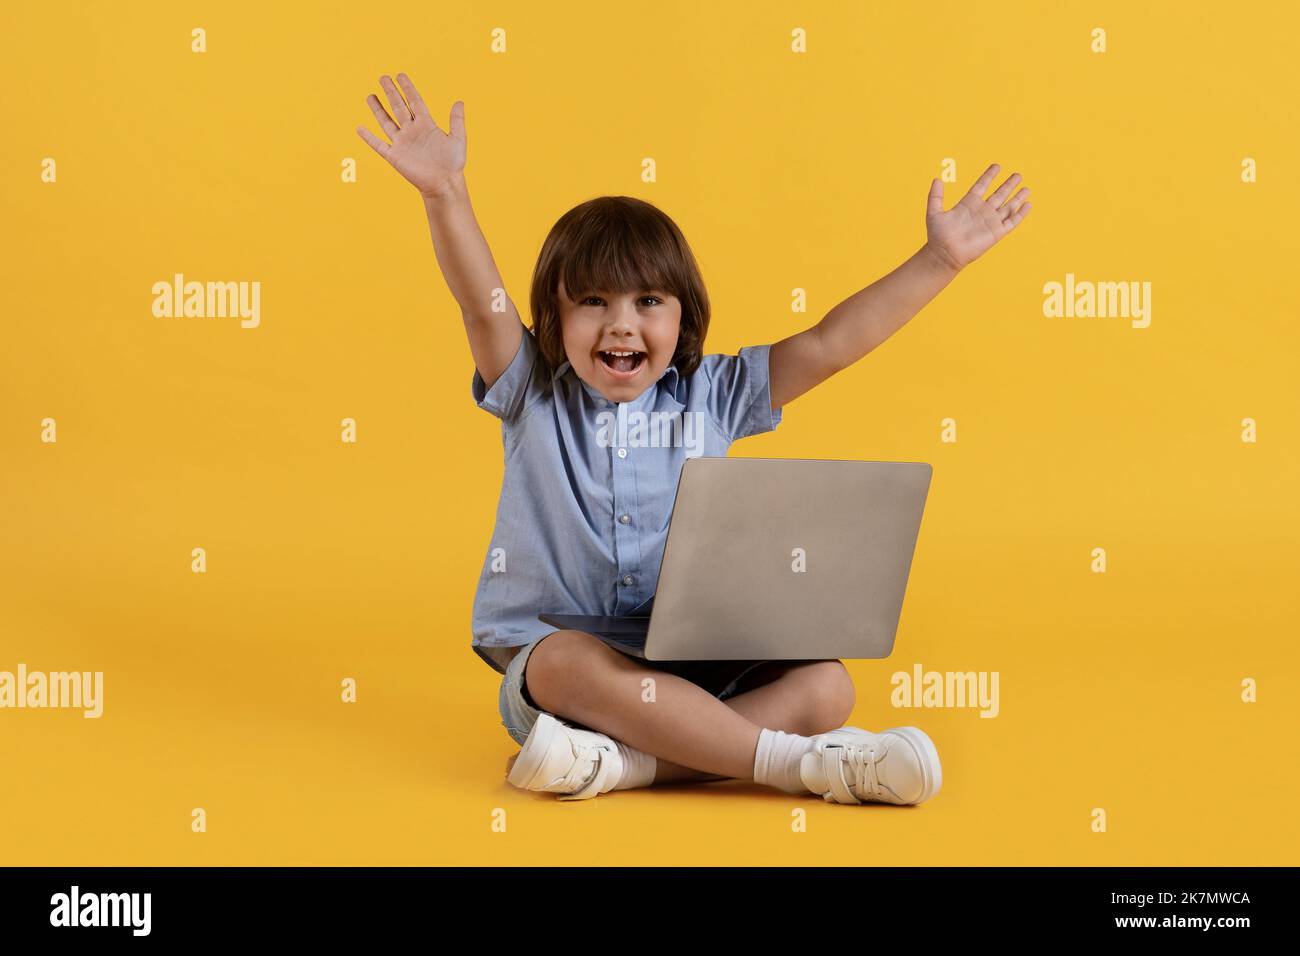 Gran educación del Internet. Niño excitado estudiando en línea en el ordenador portátil y gritando hooray, disfrutando el aprendizaje a distancia Foto de stock